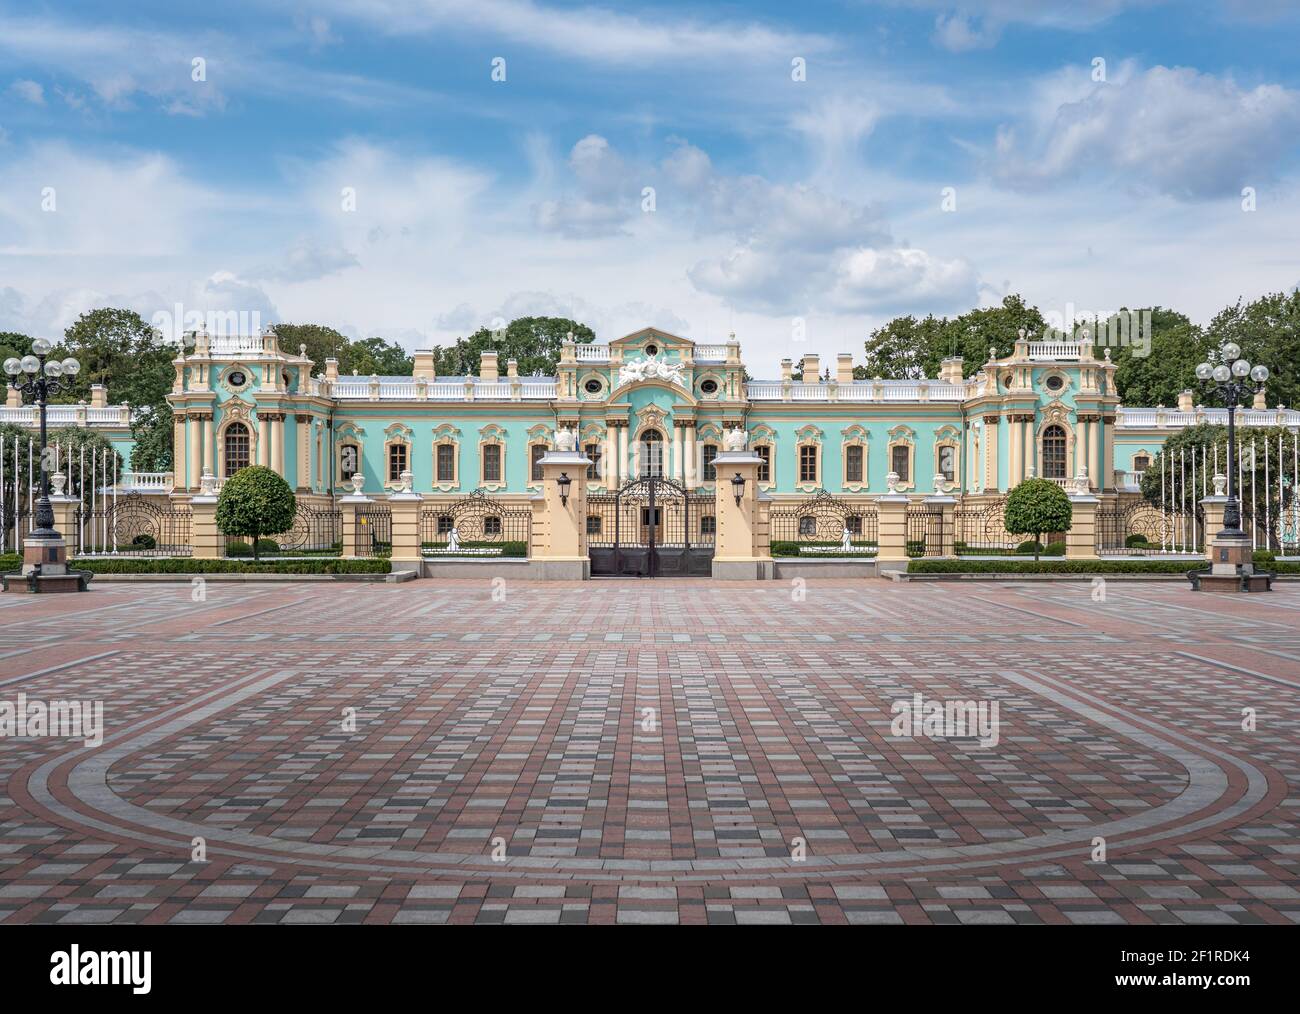 Résidence présidentielle du Palais Mariyinsky sur la place Konstytutsii - Kiev, Ukraine Banque D'Images